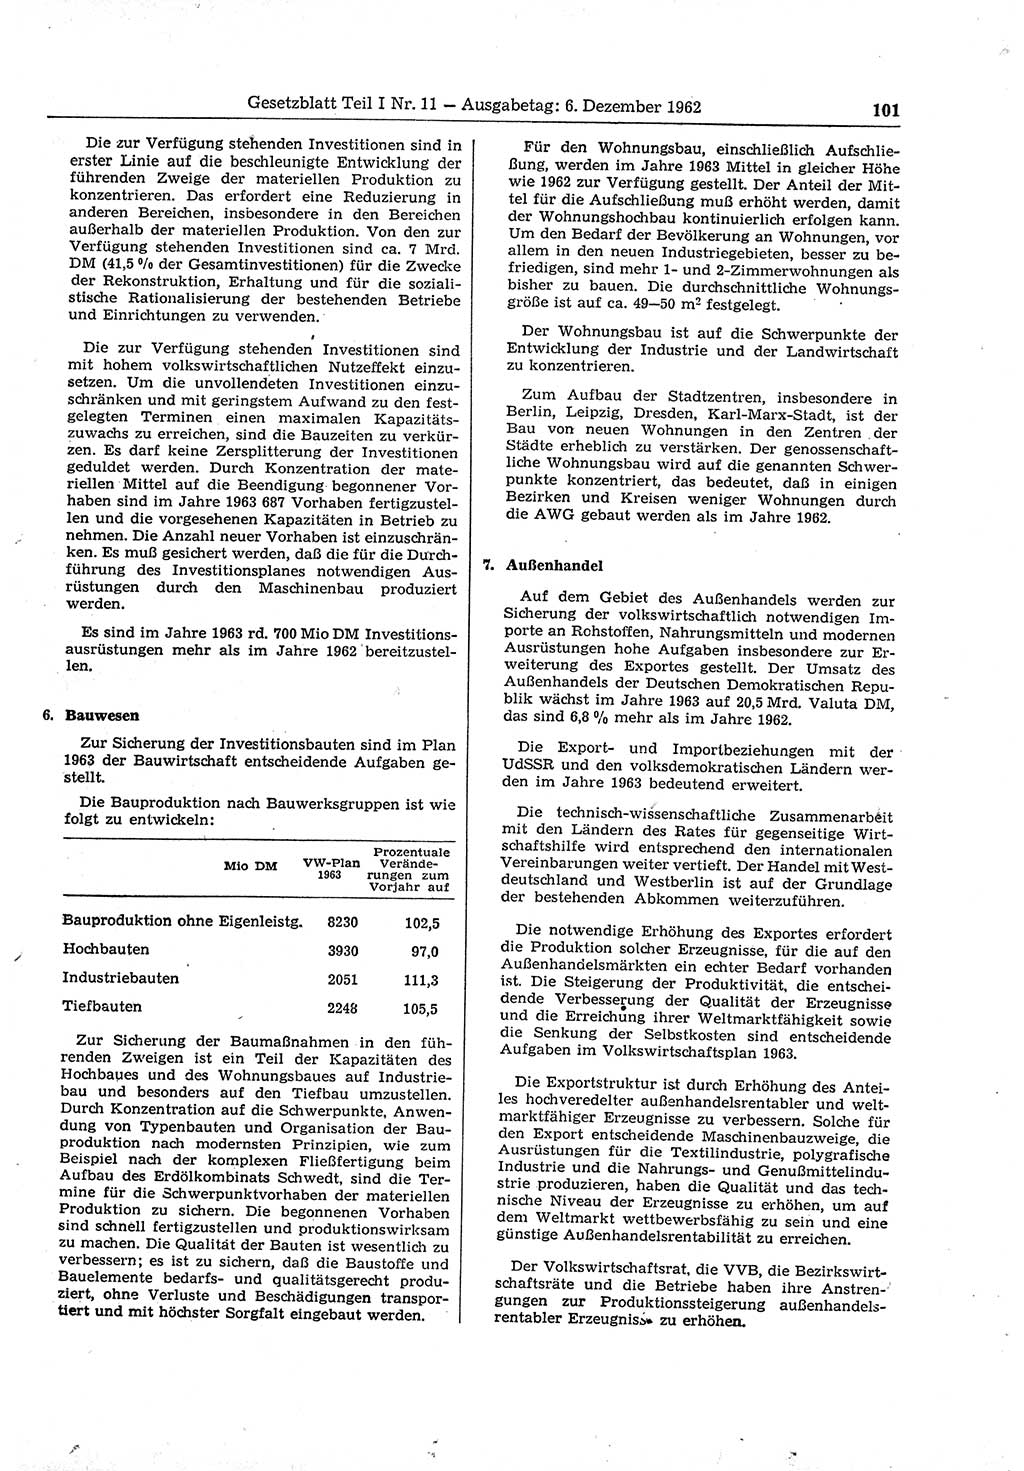 Gesetzblatt (GBl.) der Deutschen Demokratischen Republik (DDR) Teil Ⅰ 1962, Seite 101 (GBl. DDR Ⅰ 1962, S. 101)